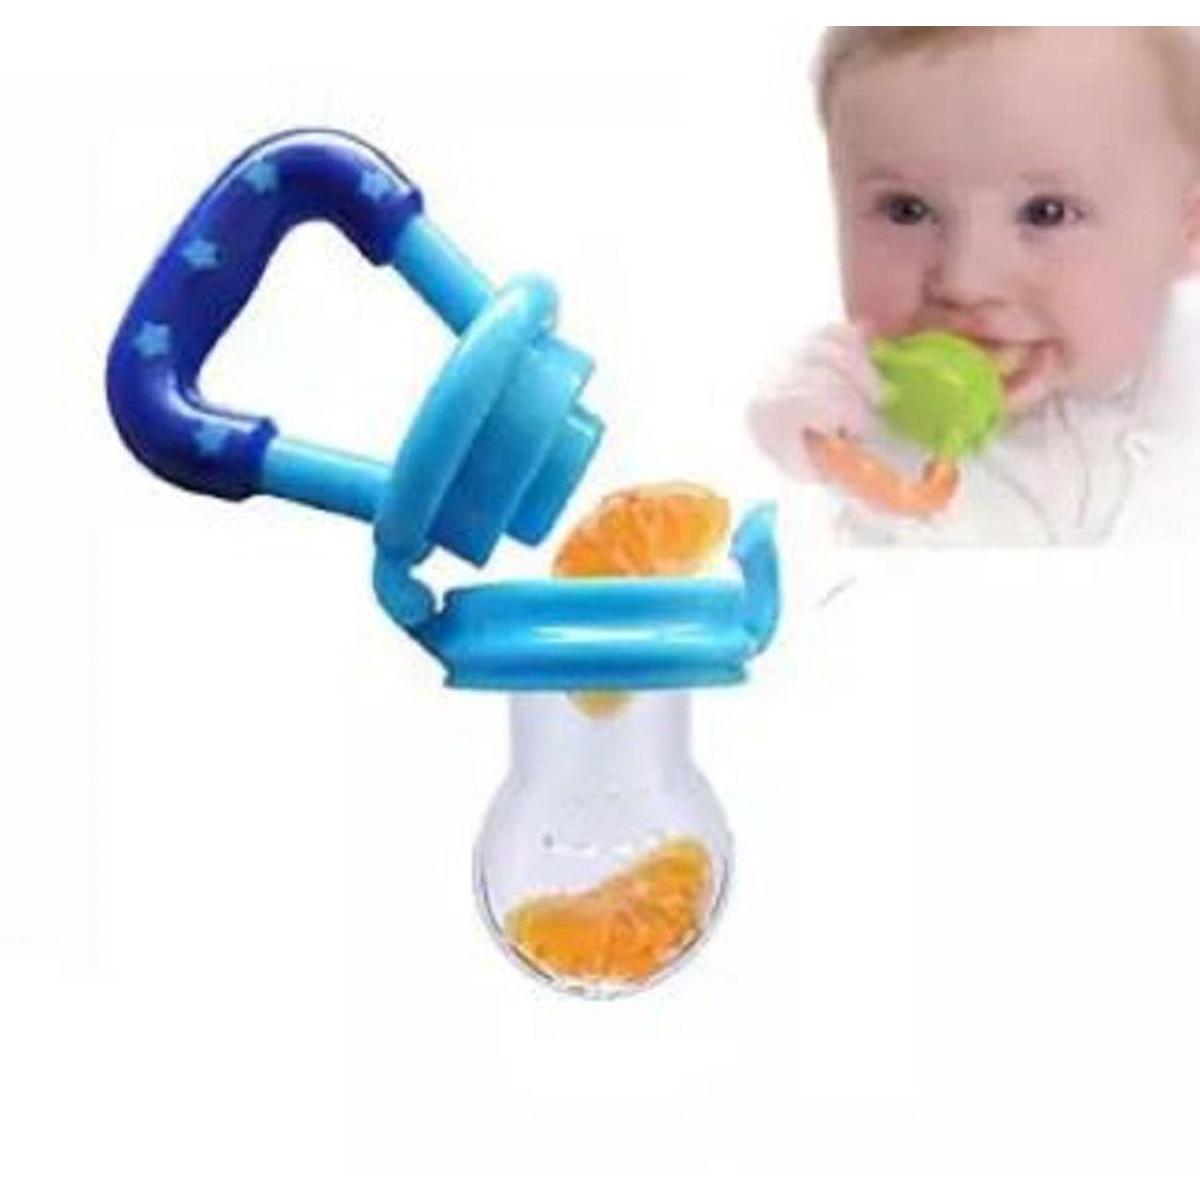 Fruit Feeder Pacifier-Baby Teething Toy Teether